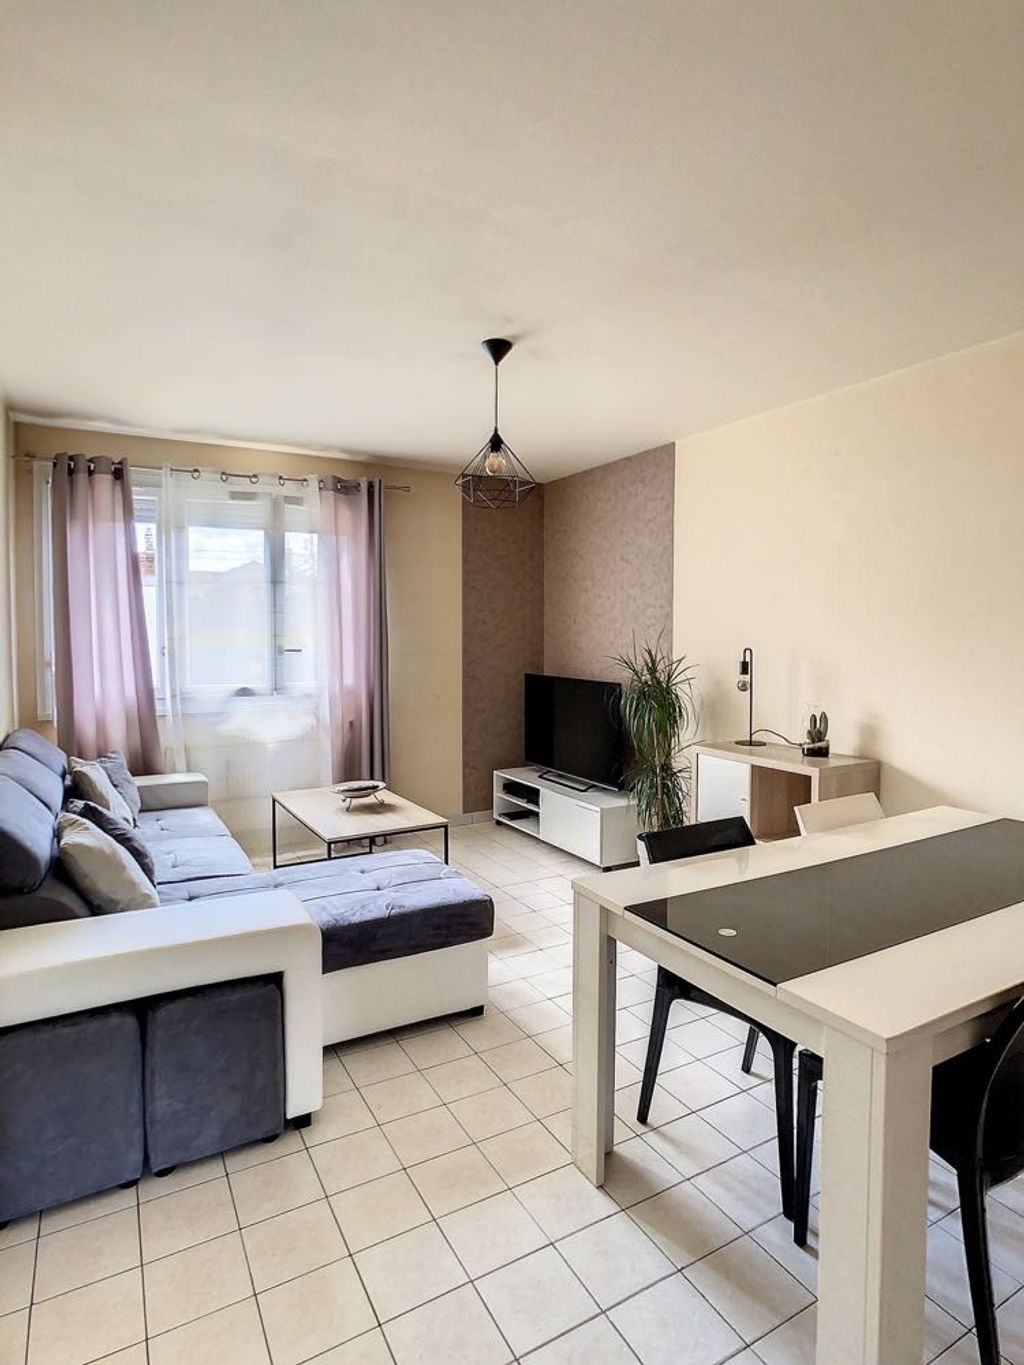 Achat appartement 3 pièces 65 m² - Dijon